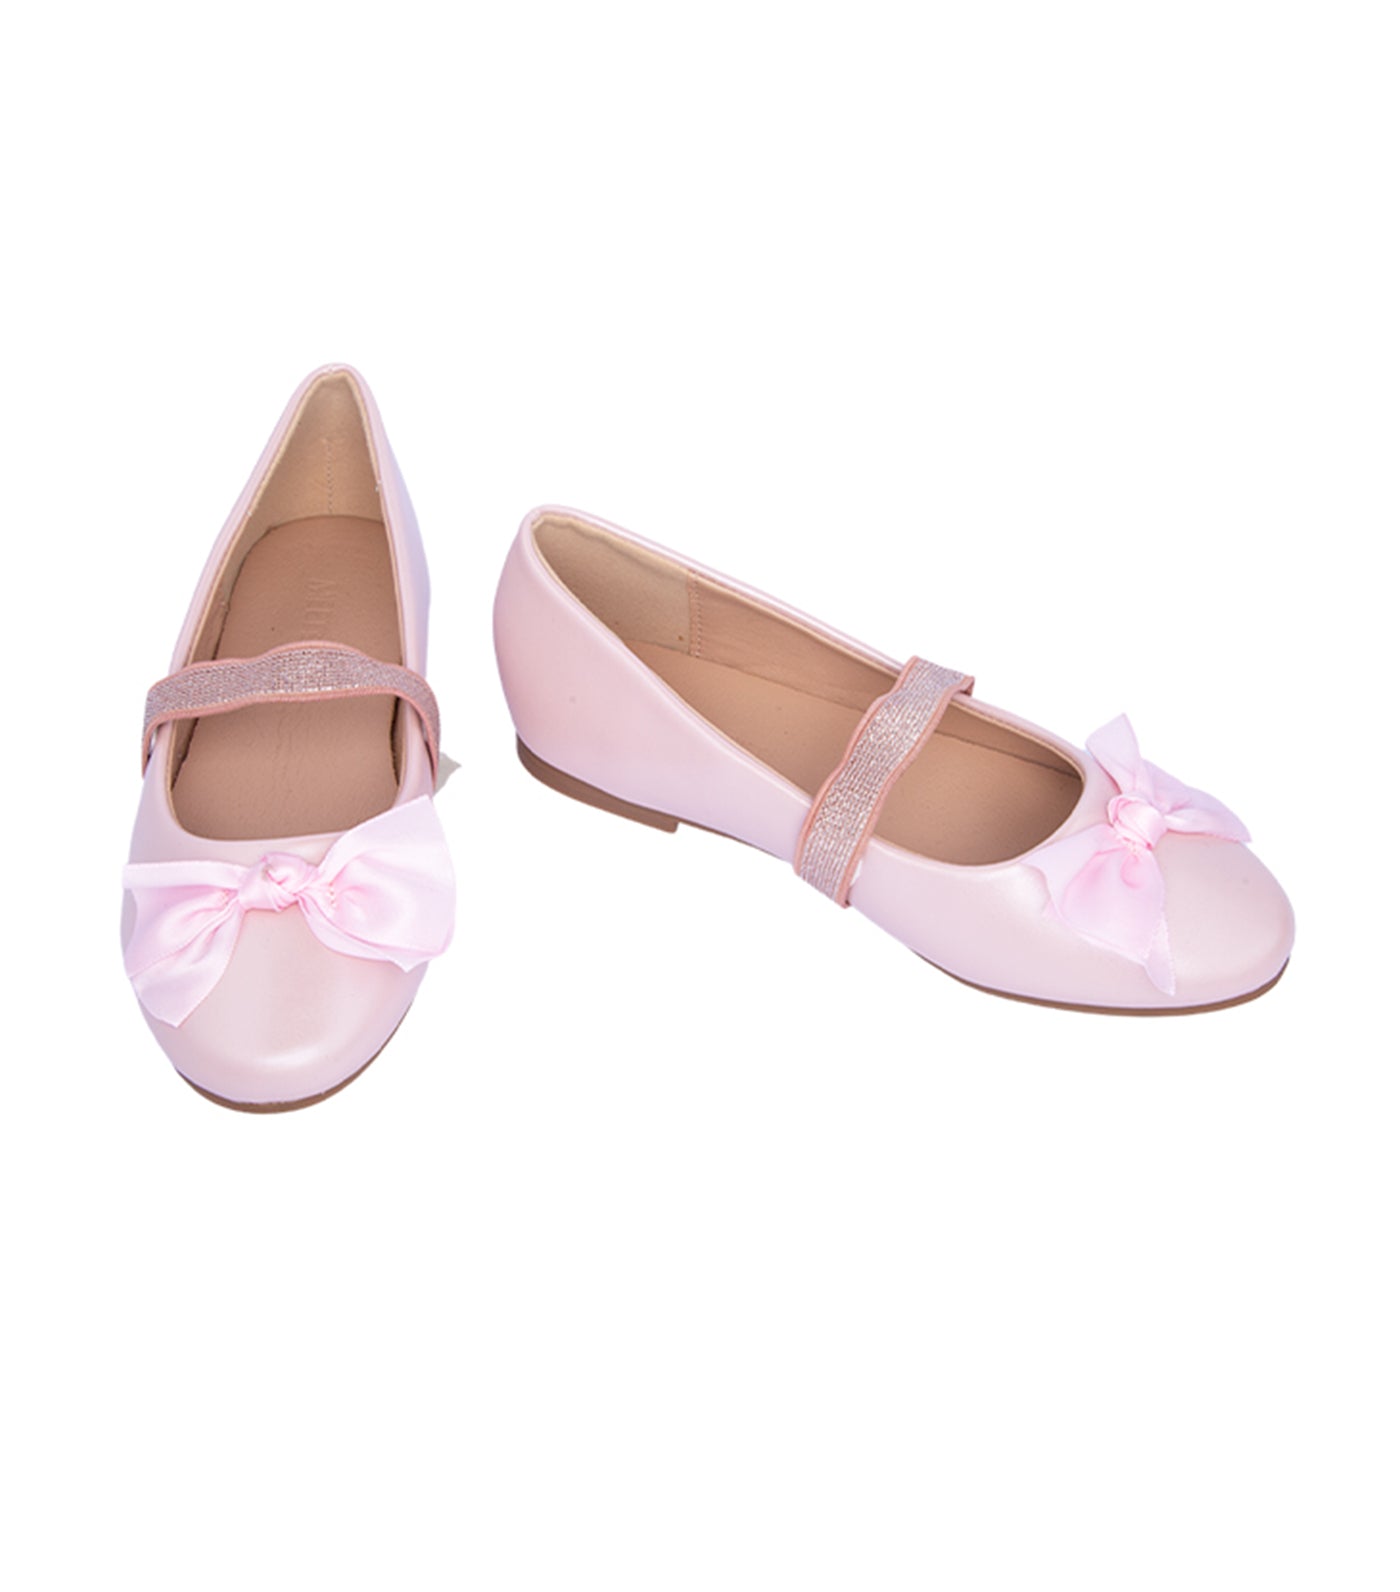 Blush Toddler to Kids Ballet Flats for Girls - Pink